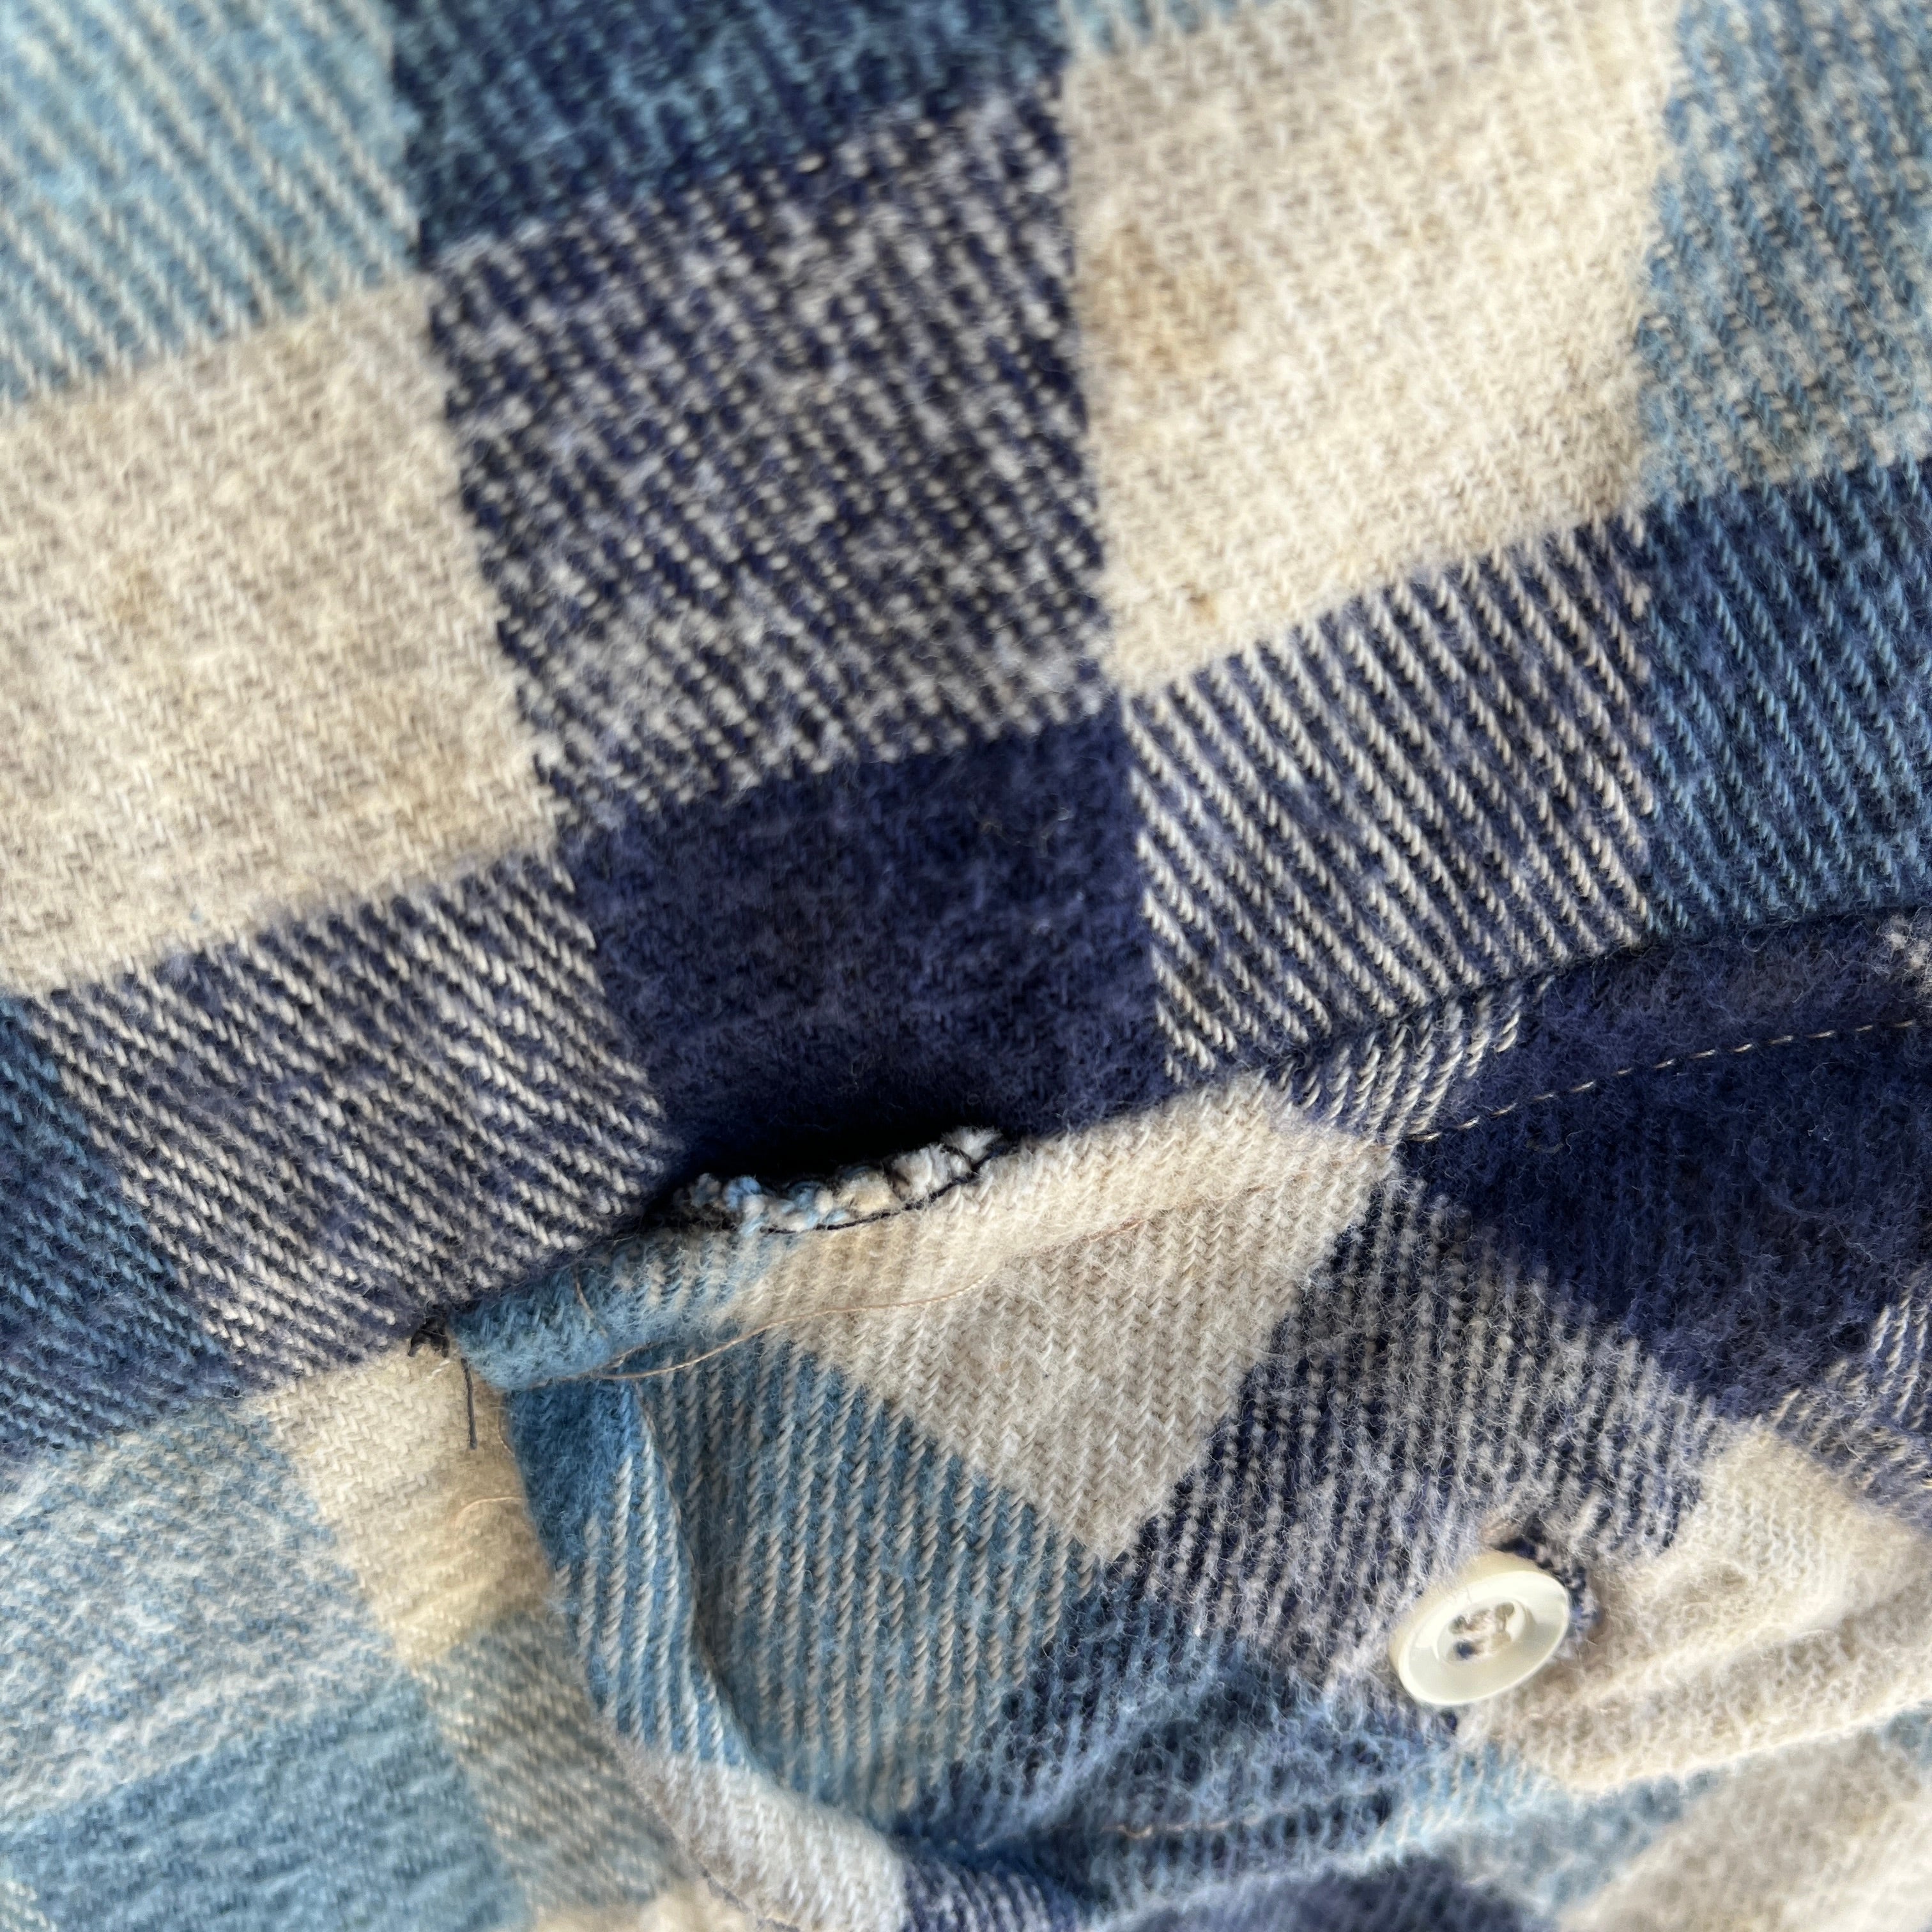 1980s Medium Weight Blue Checkered Flannel